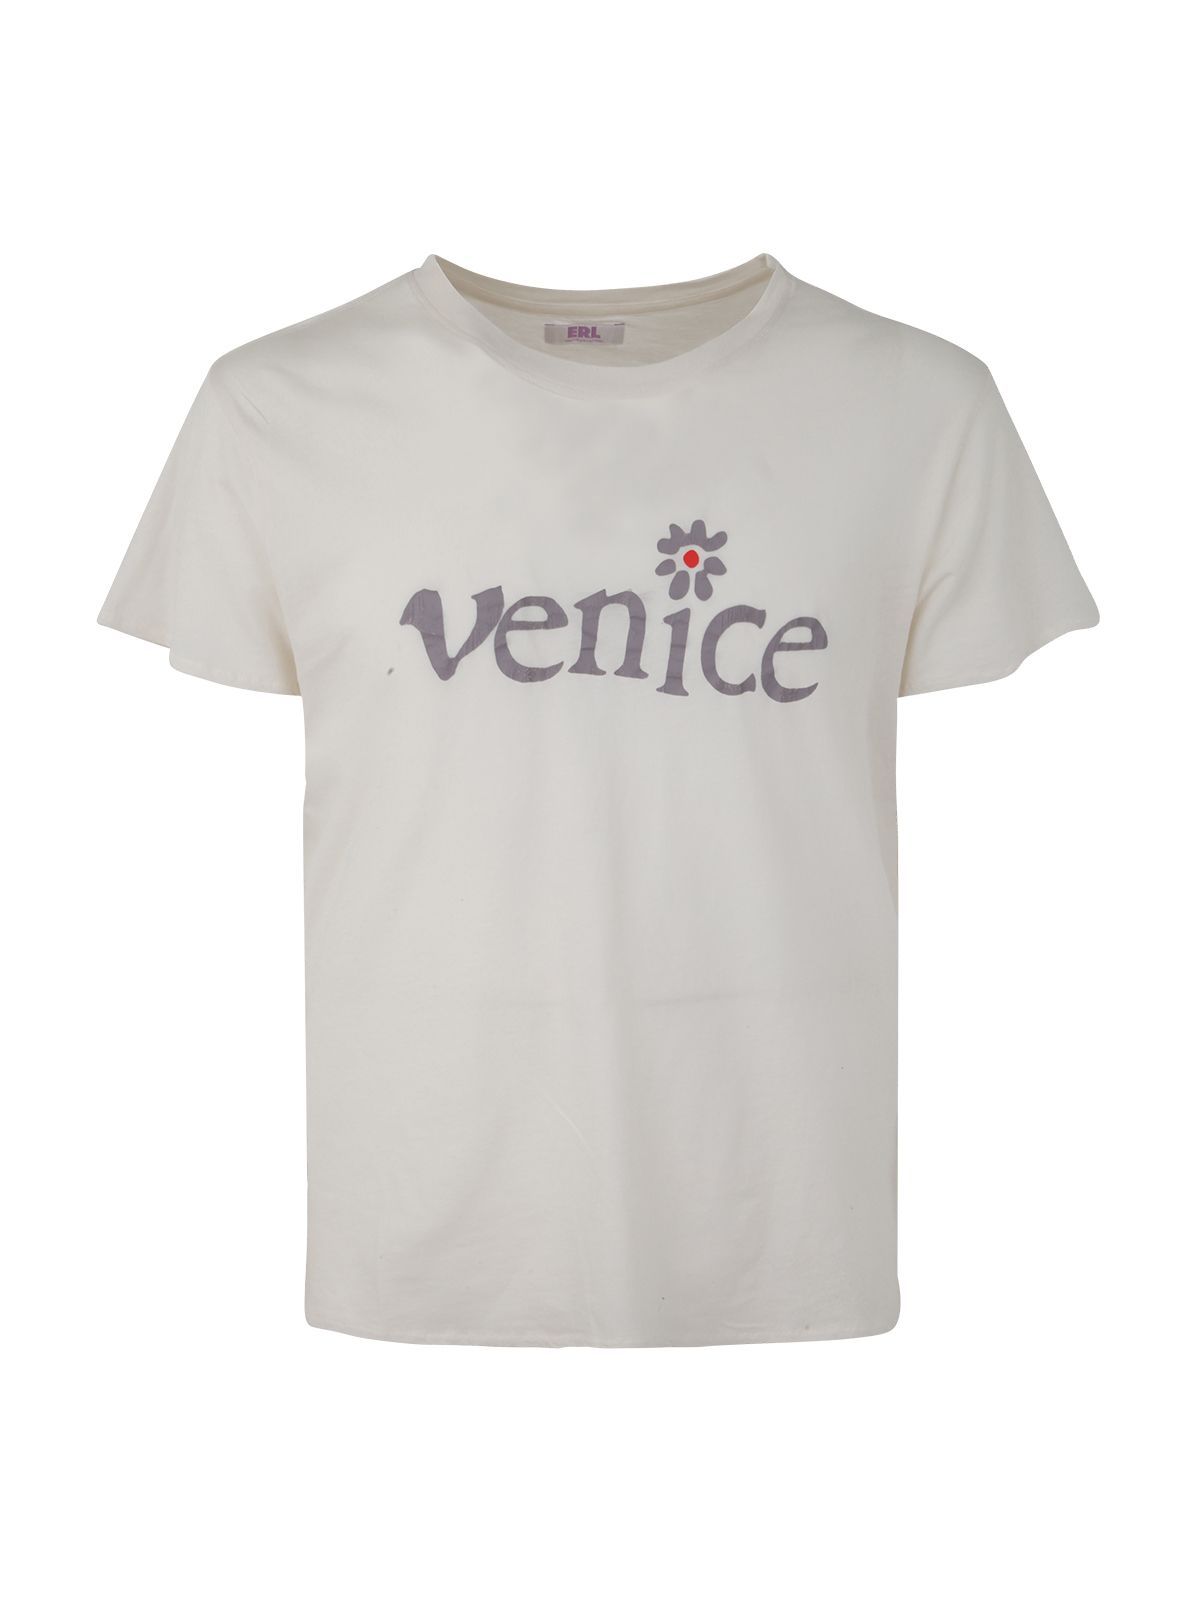 Shop Erl Men's Knit T-shirt: Venice